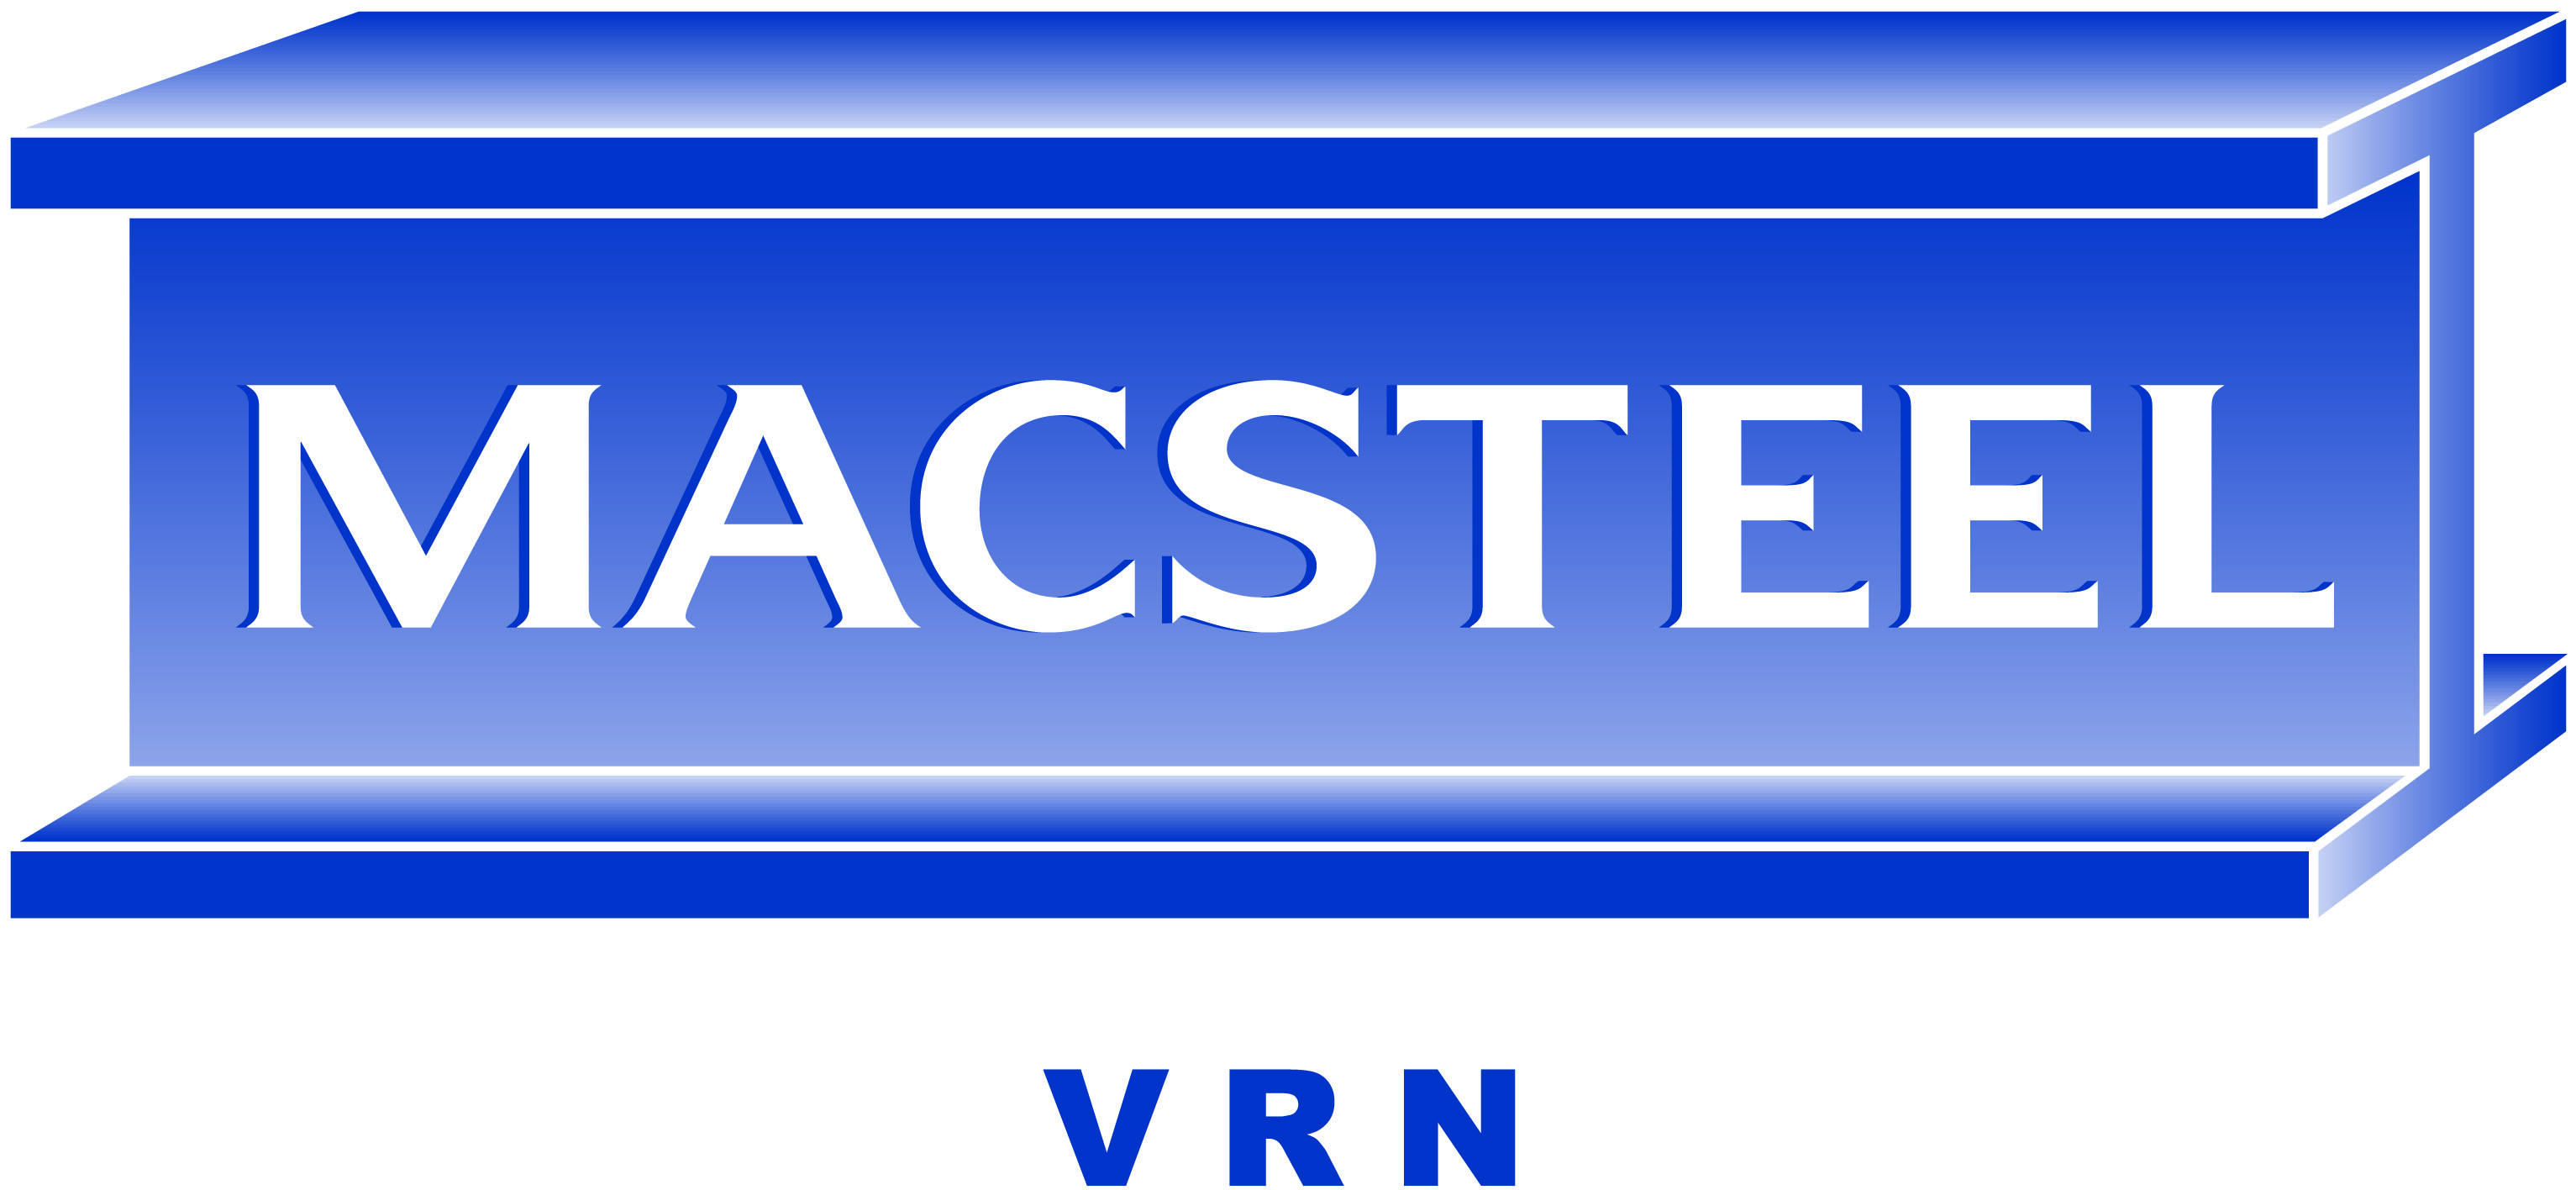 Macsteel Vrn - Pretoria logo